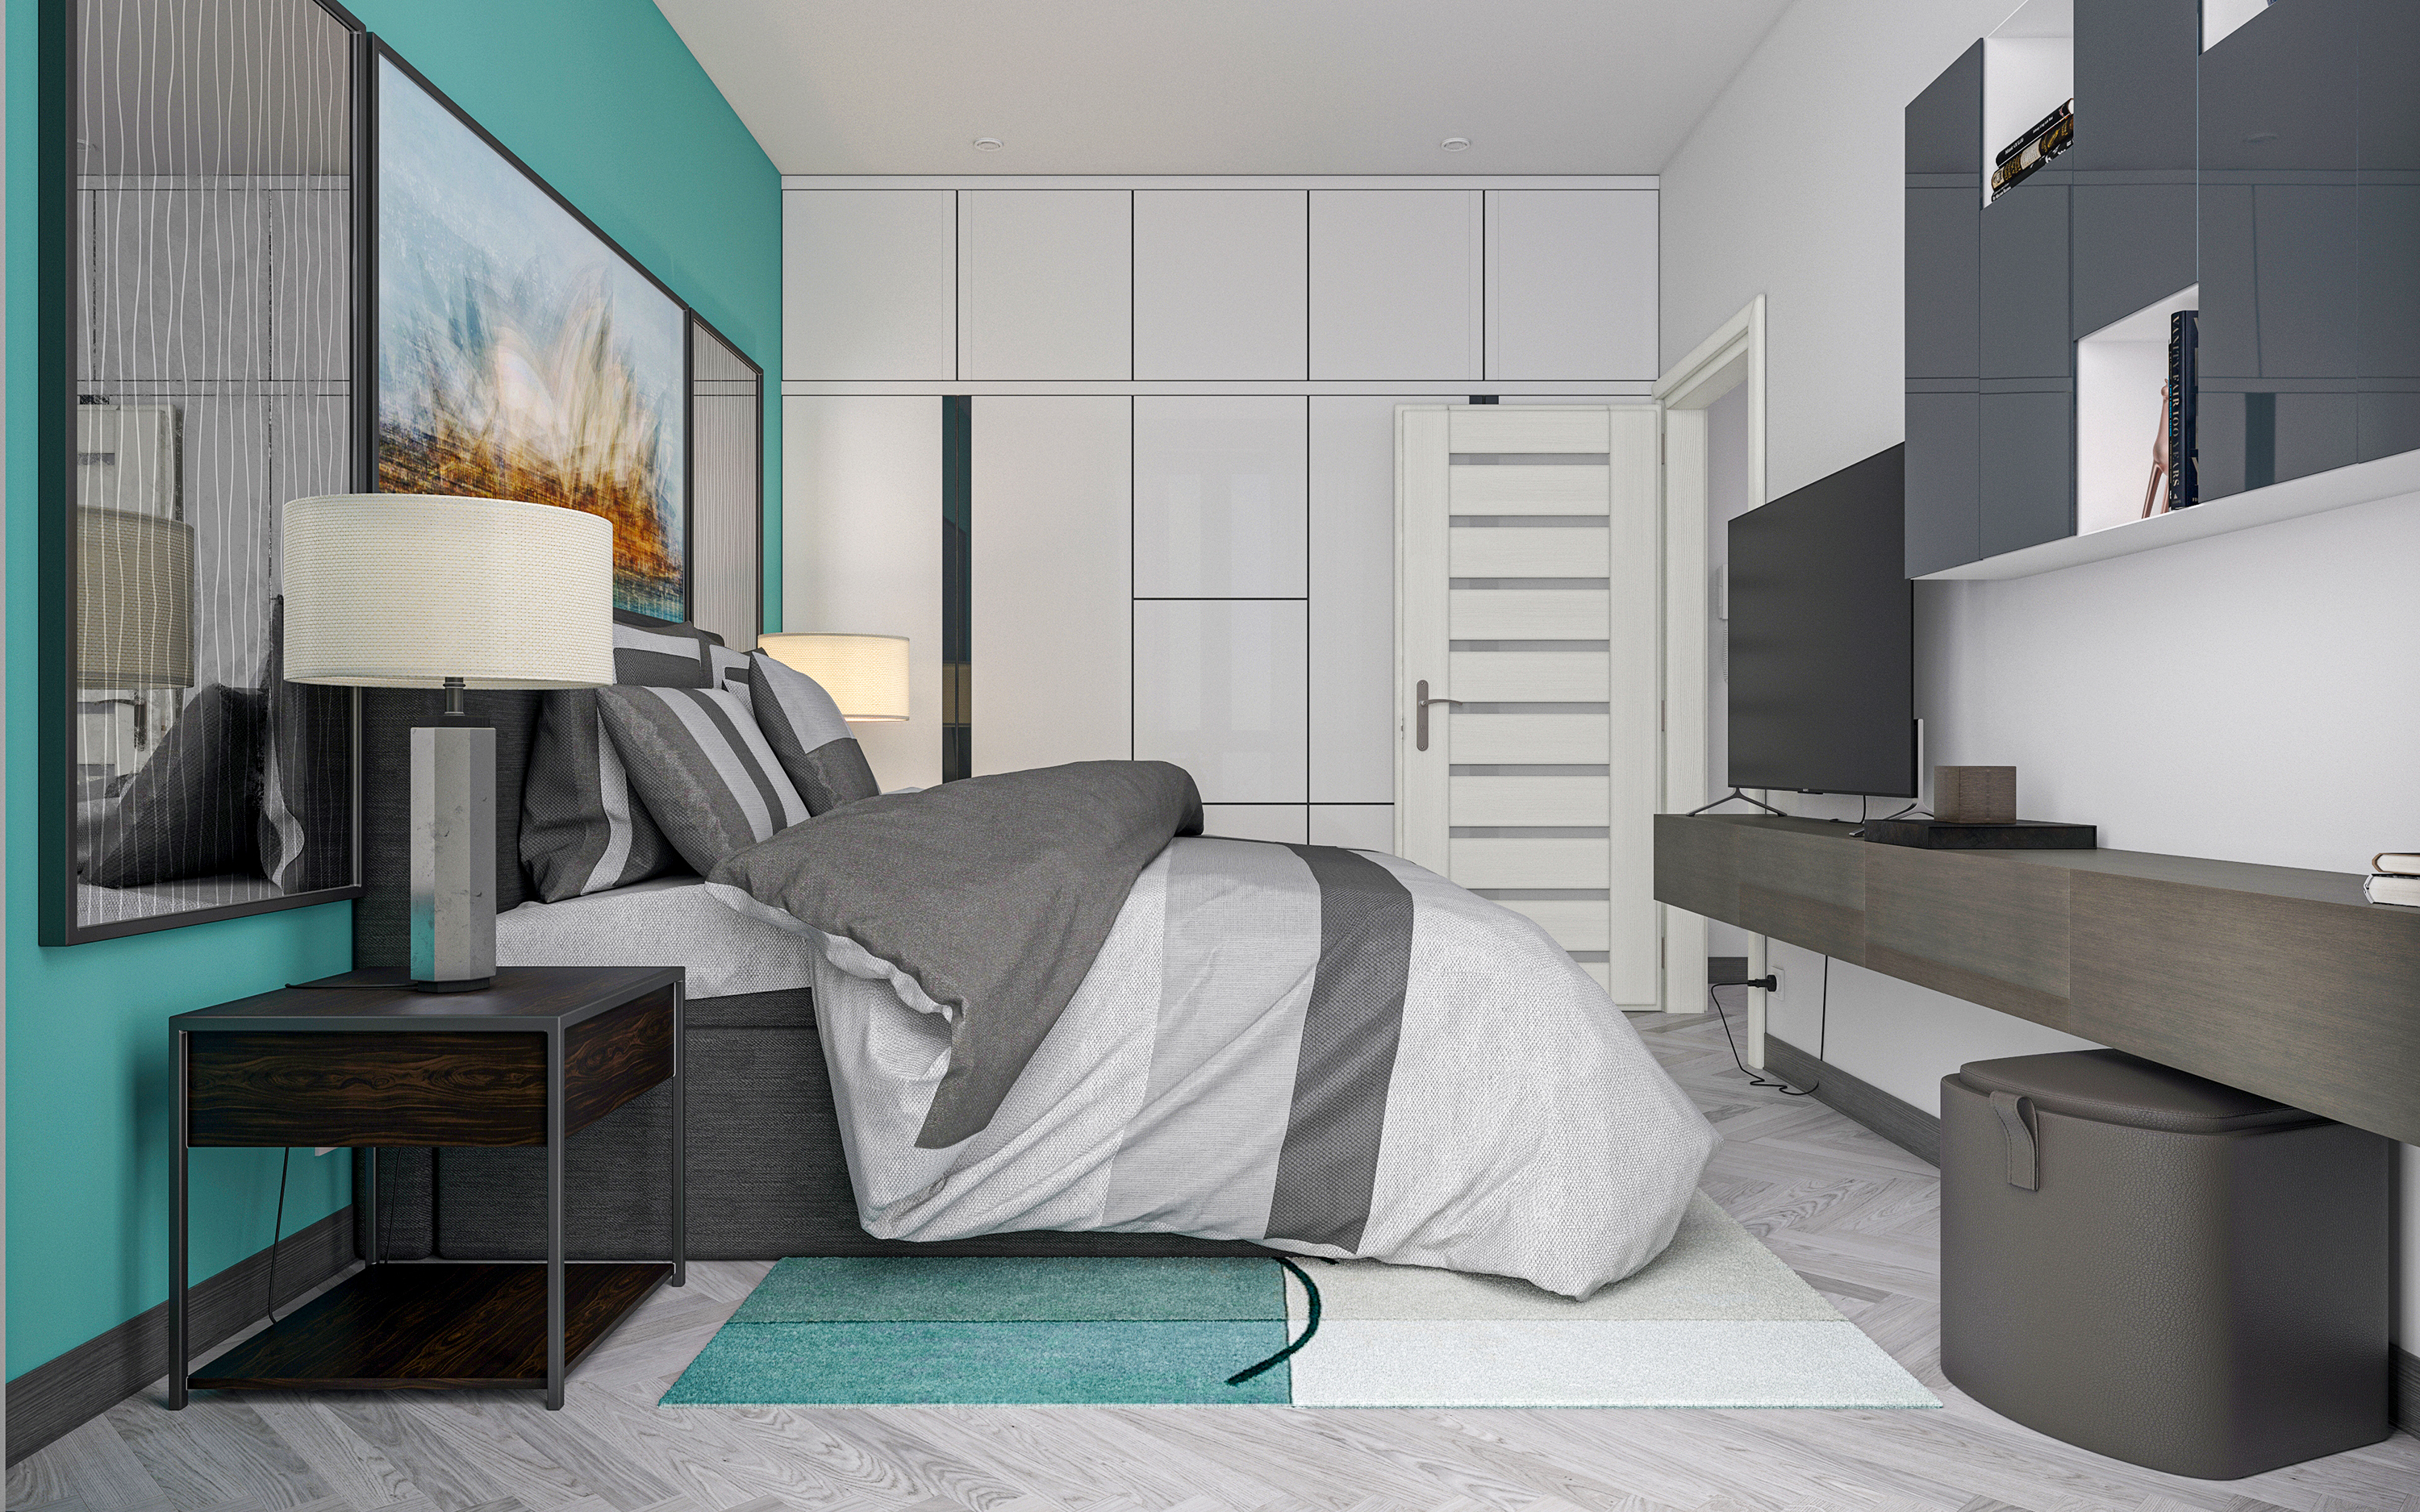 Appartamento con una camera da letto S66 in 3d max corona render immagine